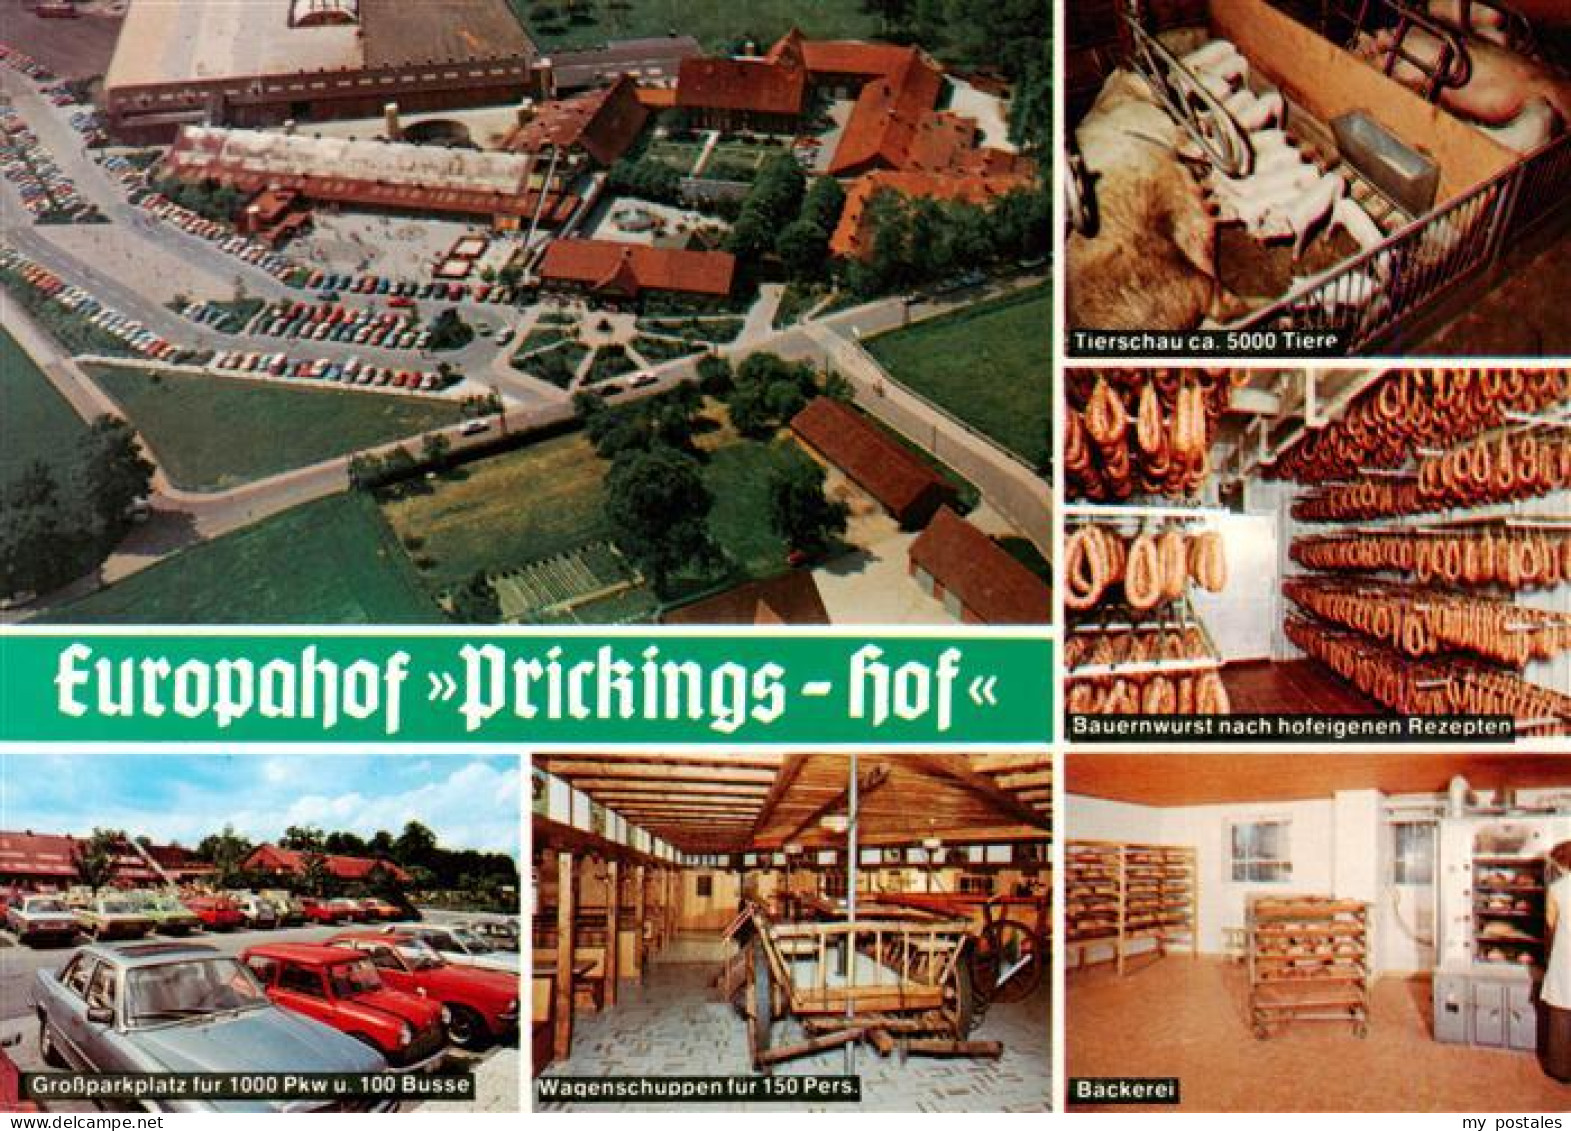 73933697 Sythen_Haltern Europahof Prickings Hof Tierschau Bauernwurst Parkplatz  - Haltern